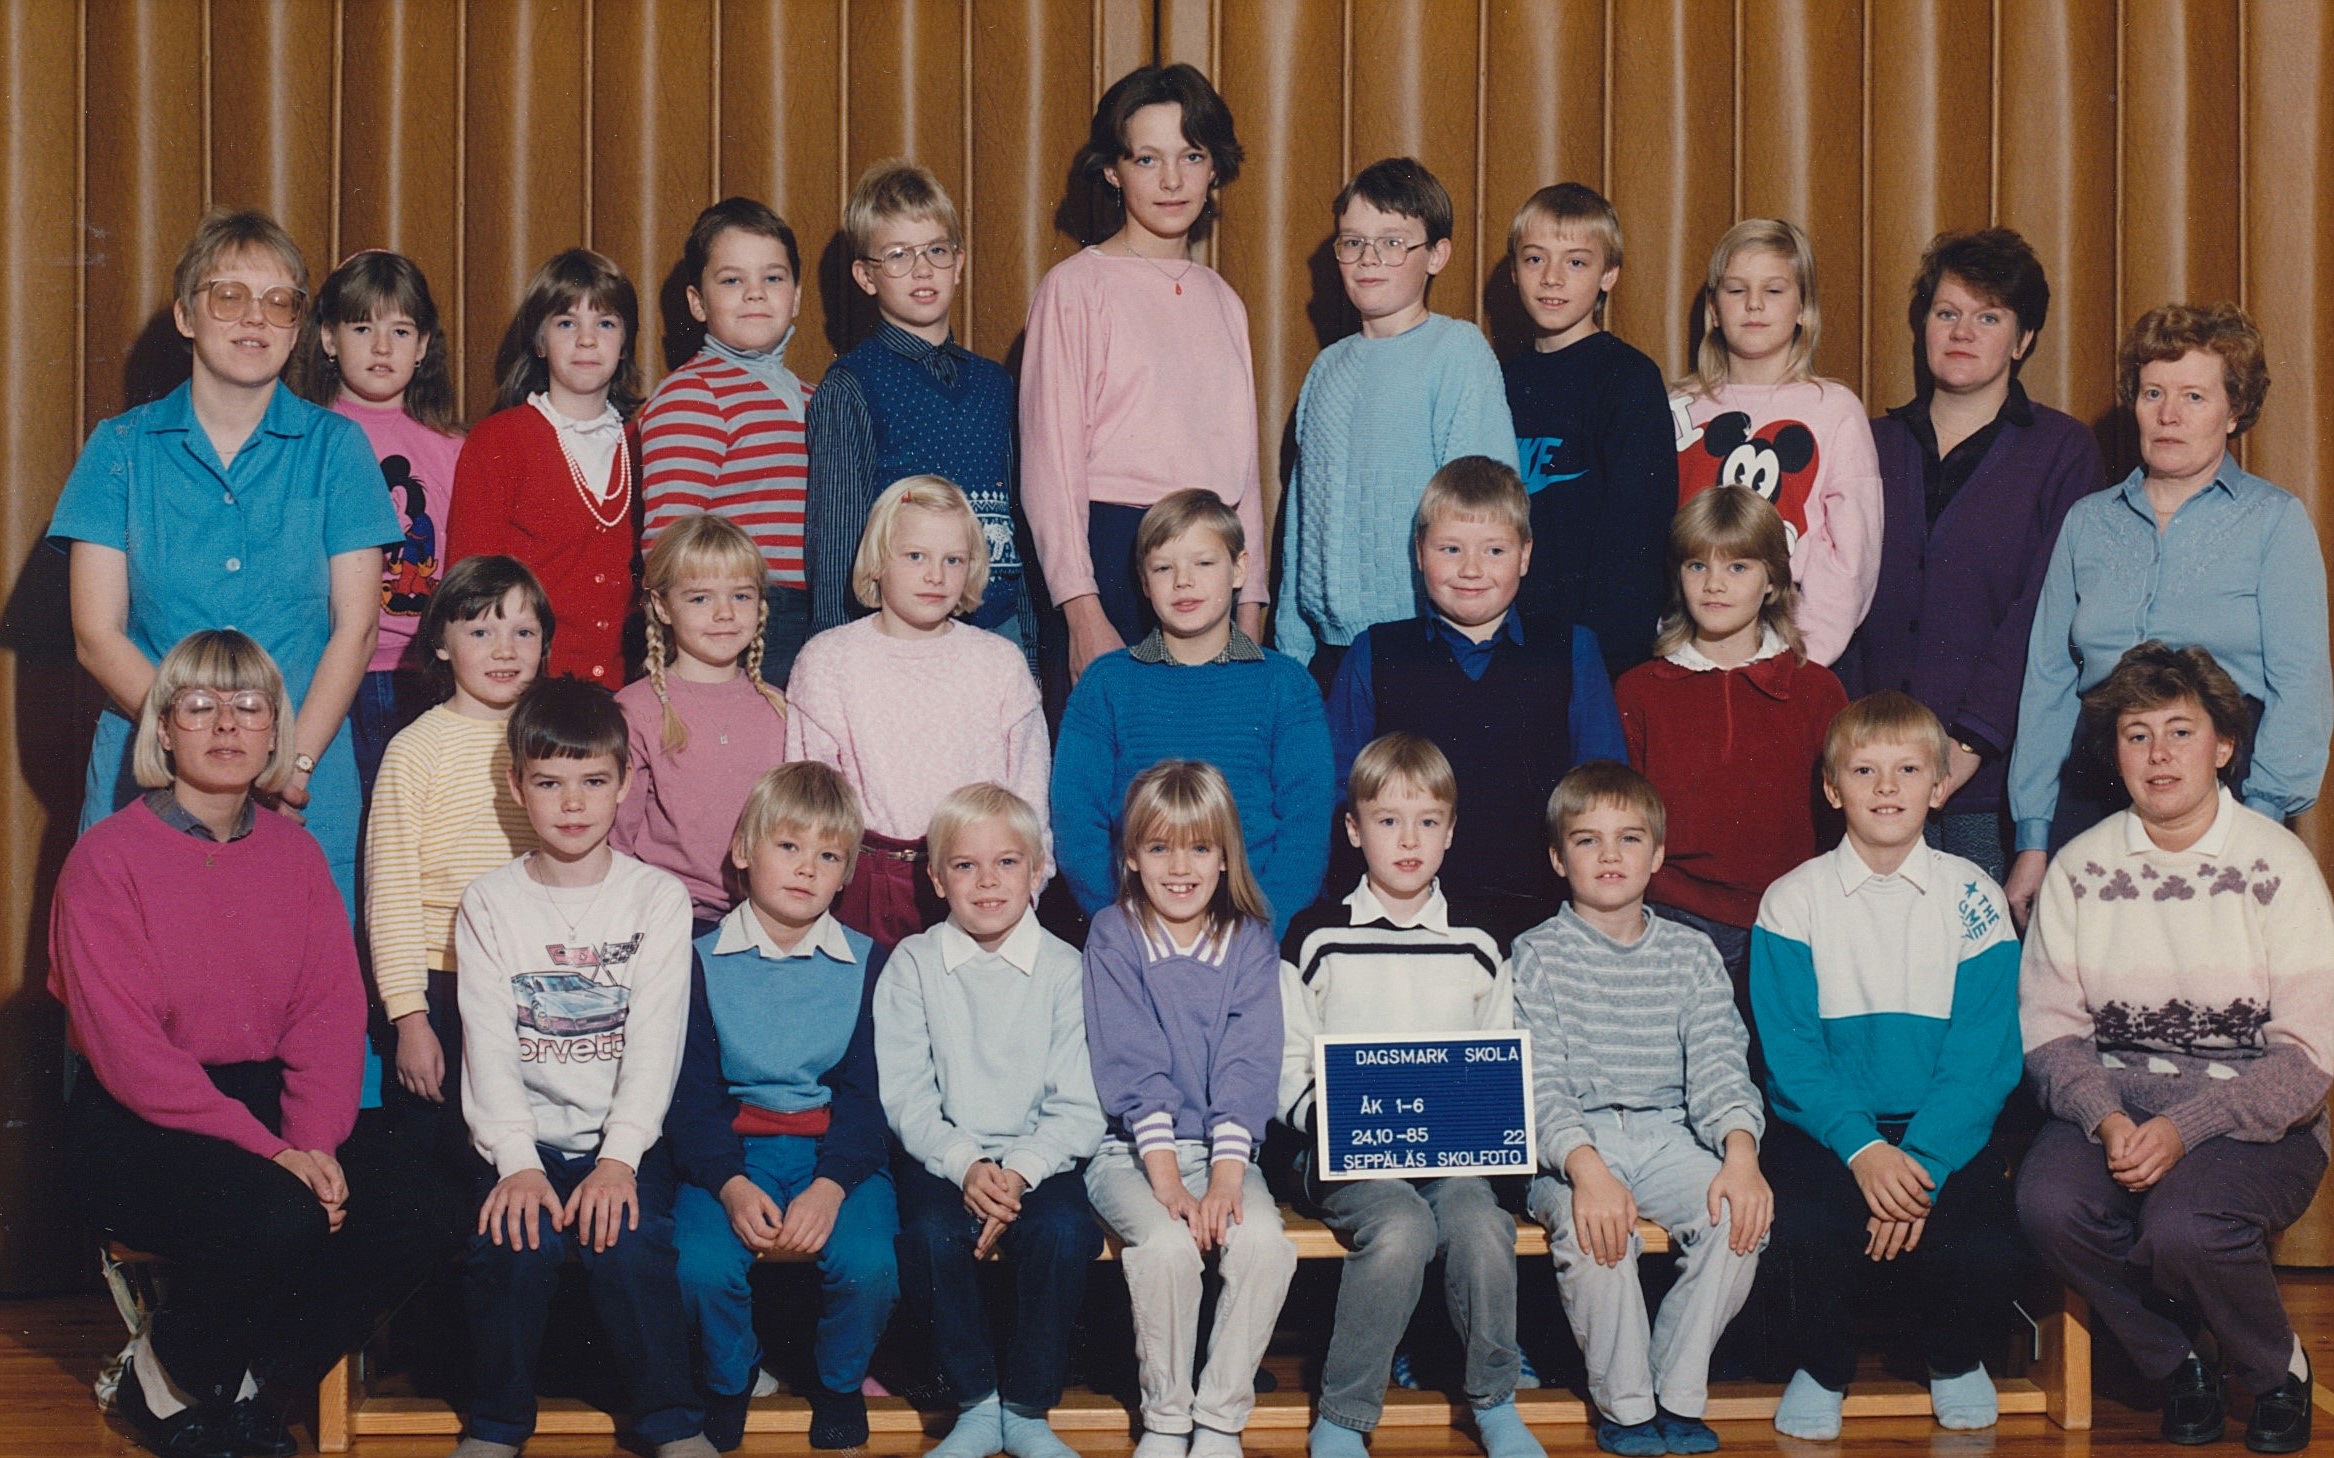 År 1985, hela Dagsmark skola.